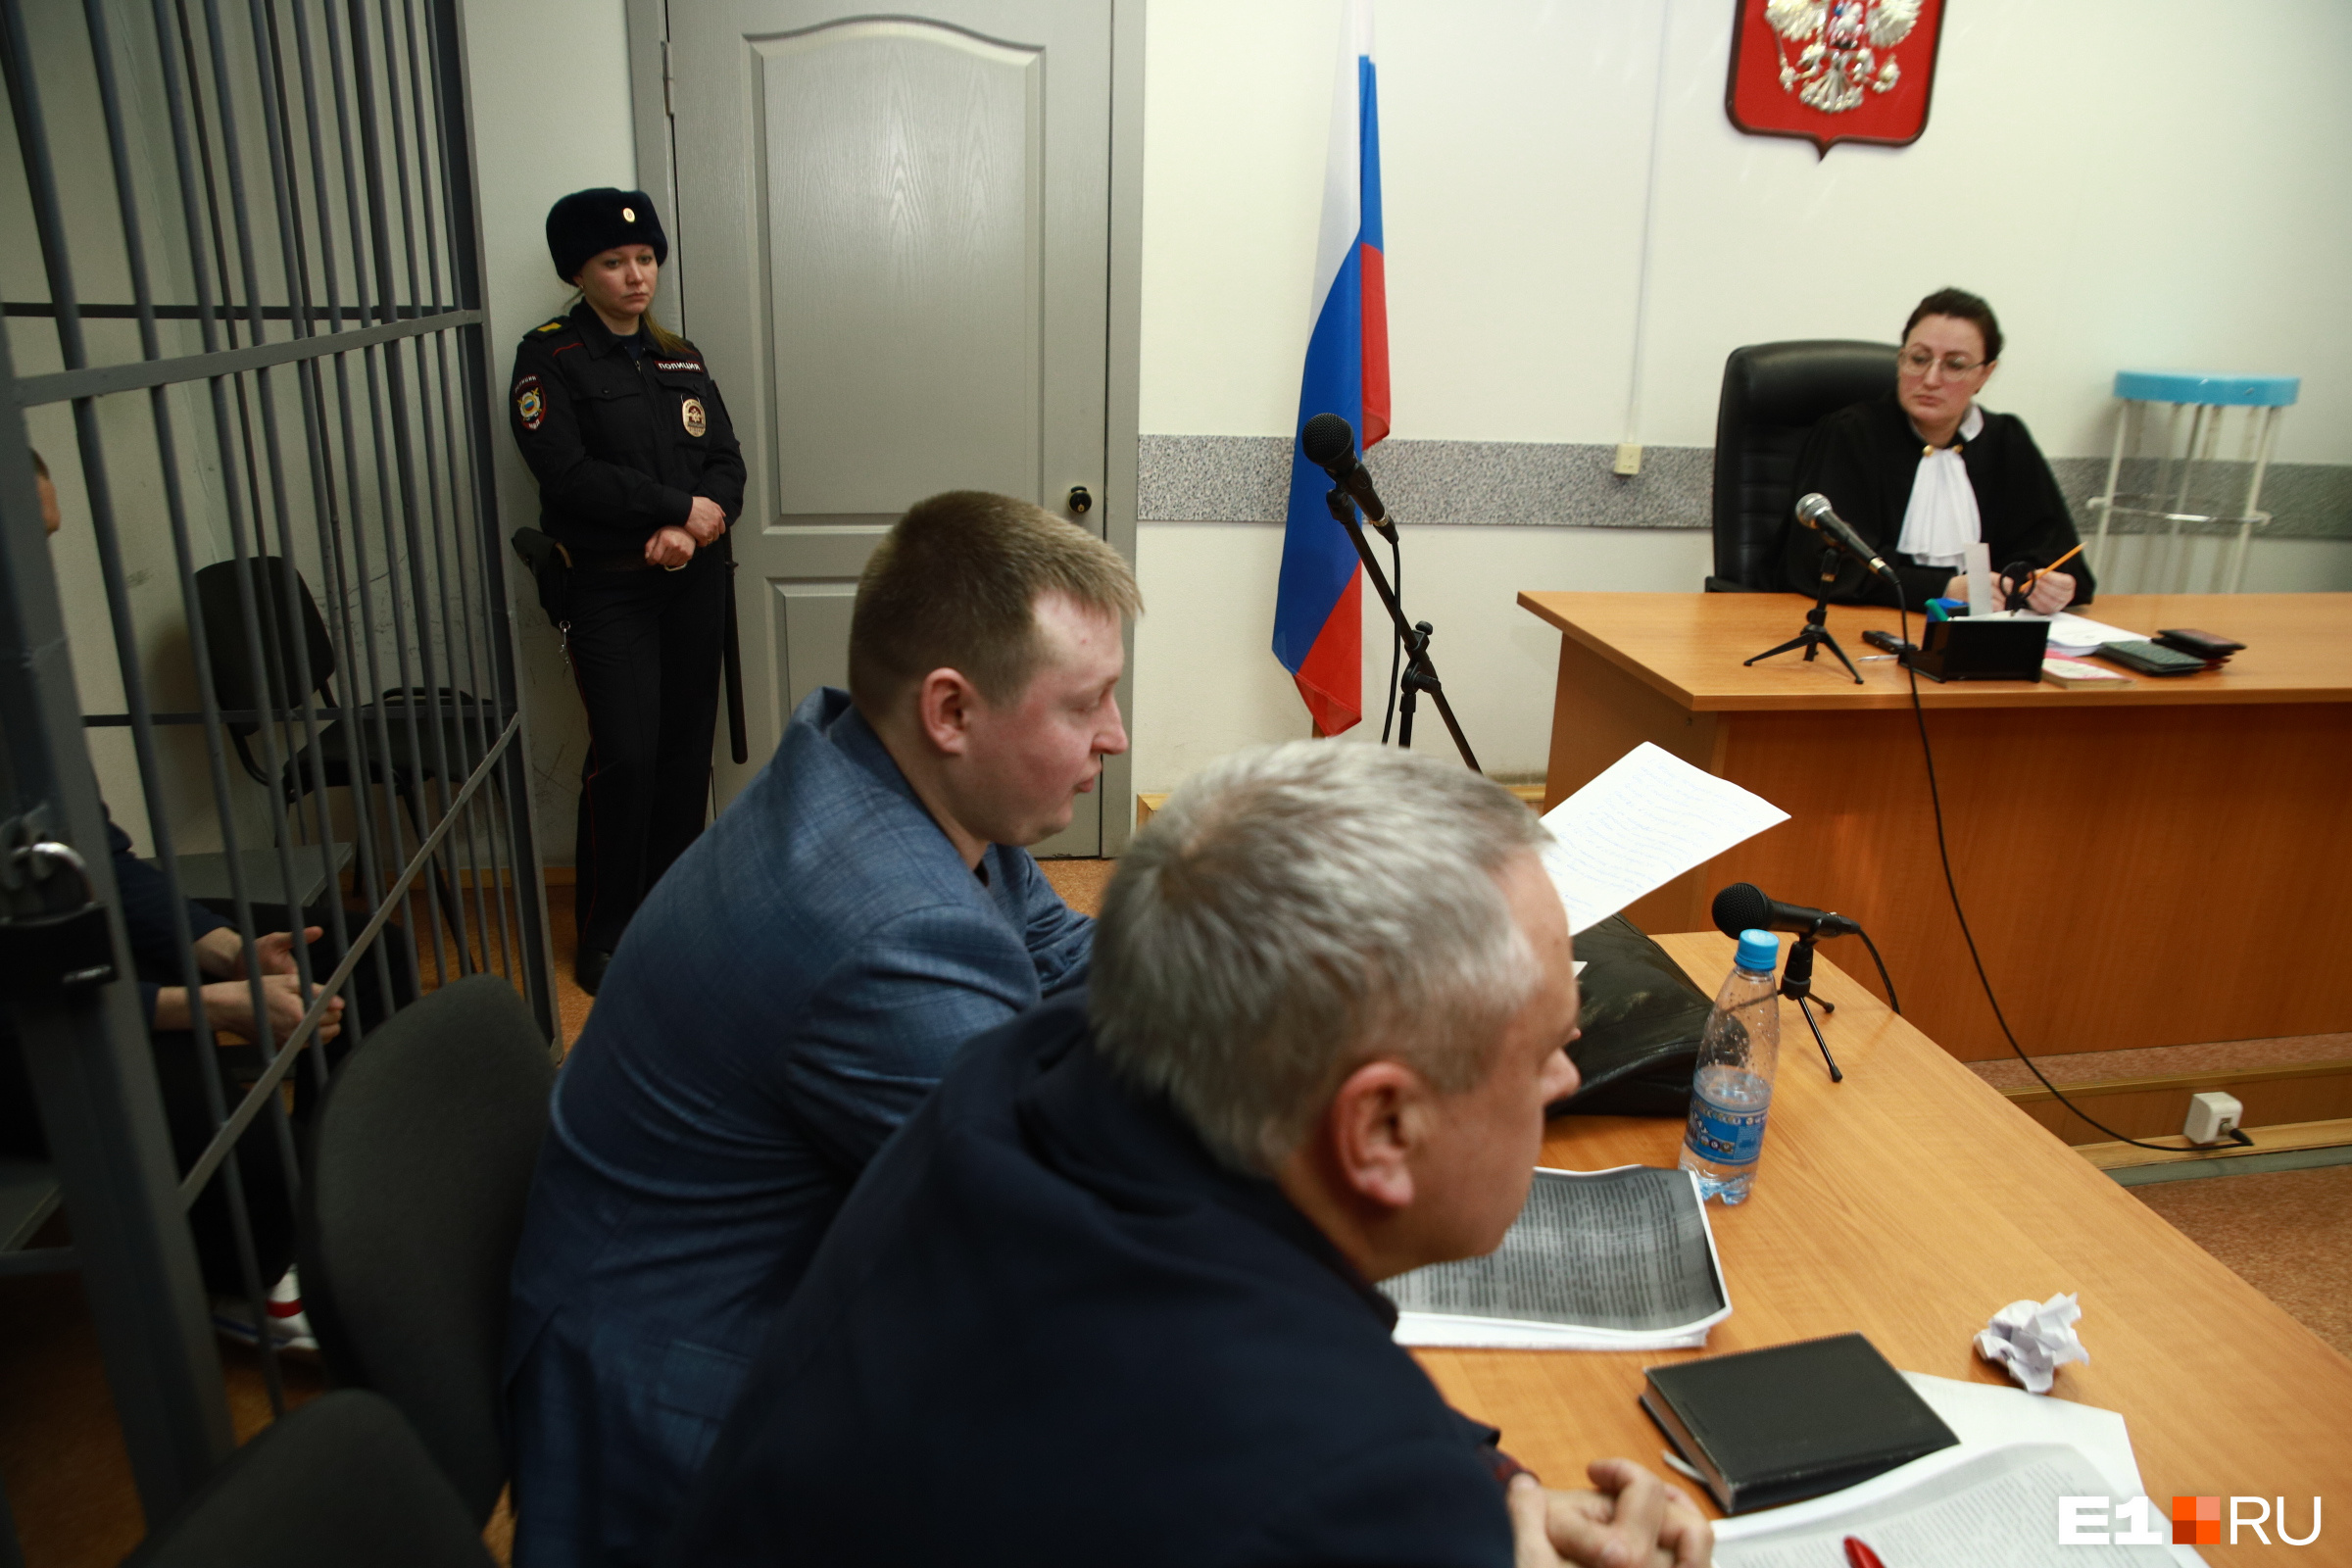 Пожалуй, закрытый режим заседаний устраивал только адвокатов Васильева, которые изначально были против присутствия журналистов